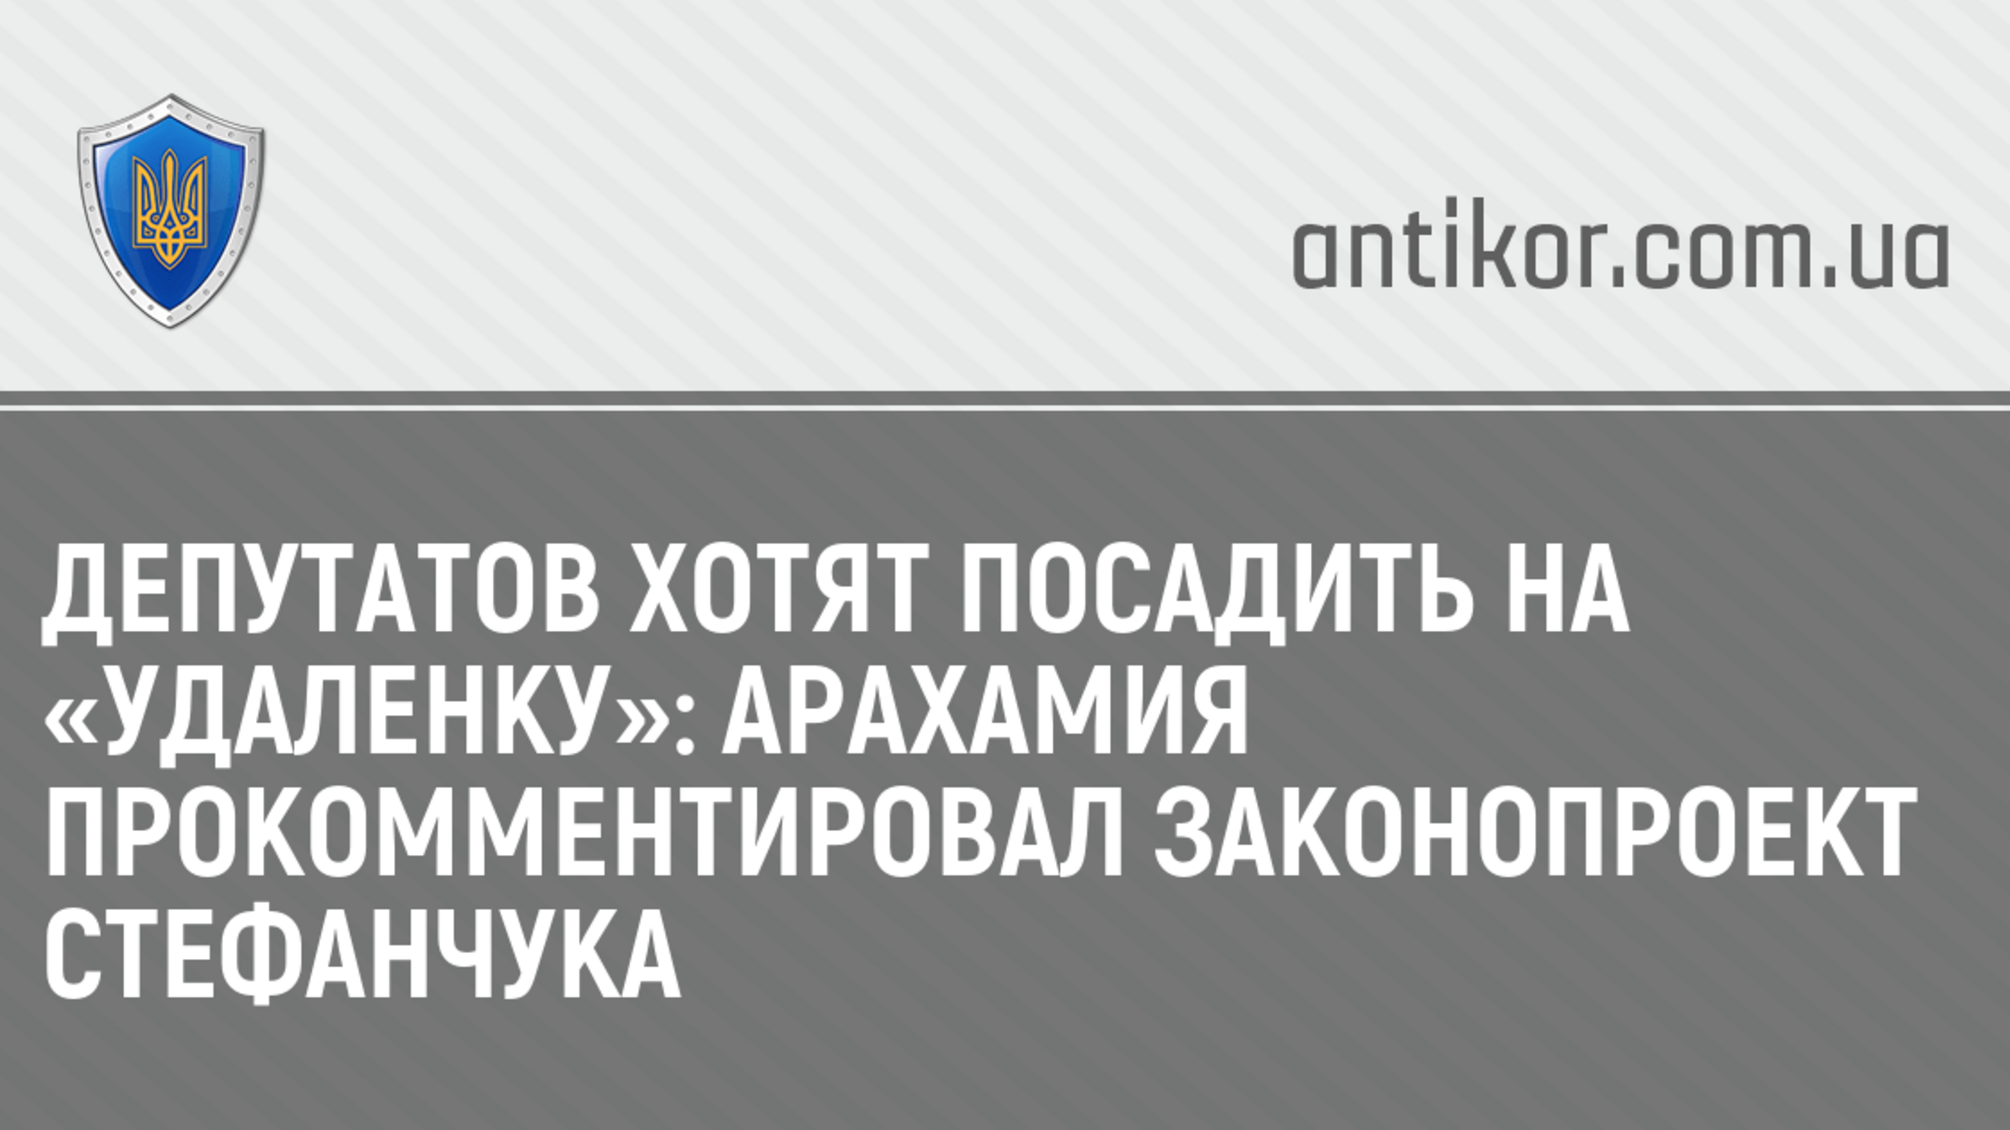 Депутатов хотят посадить на «удаленку»: Арахамия прокомментировал законопроект Стефанчука